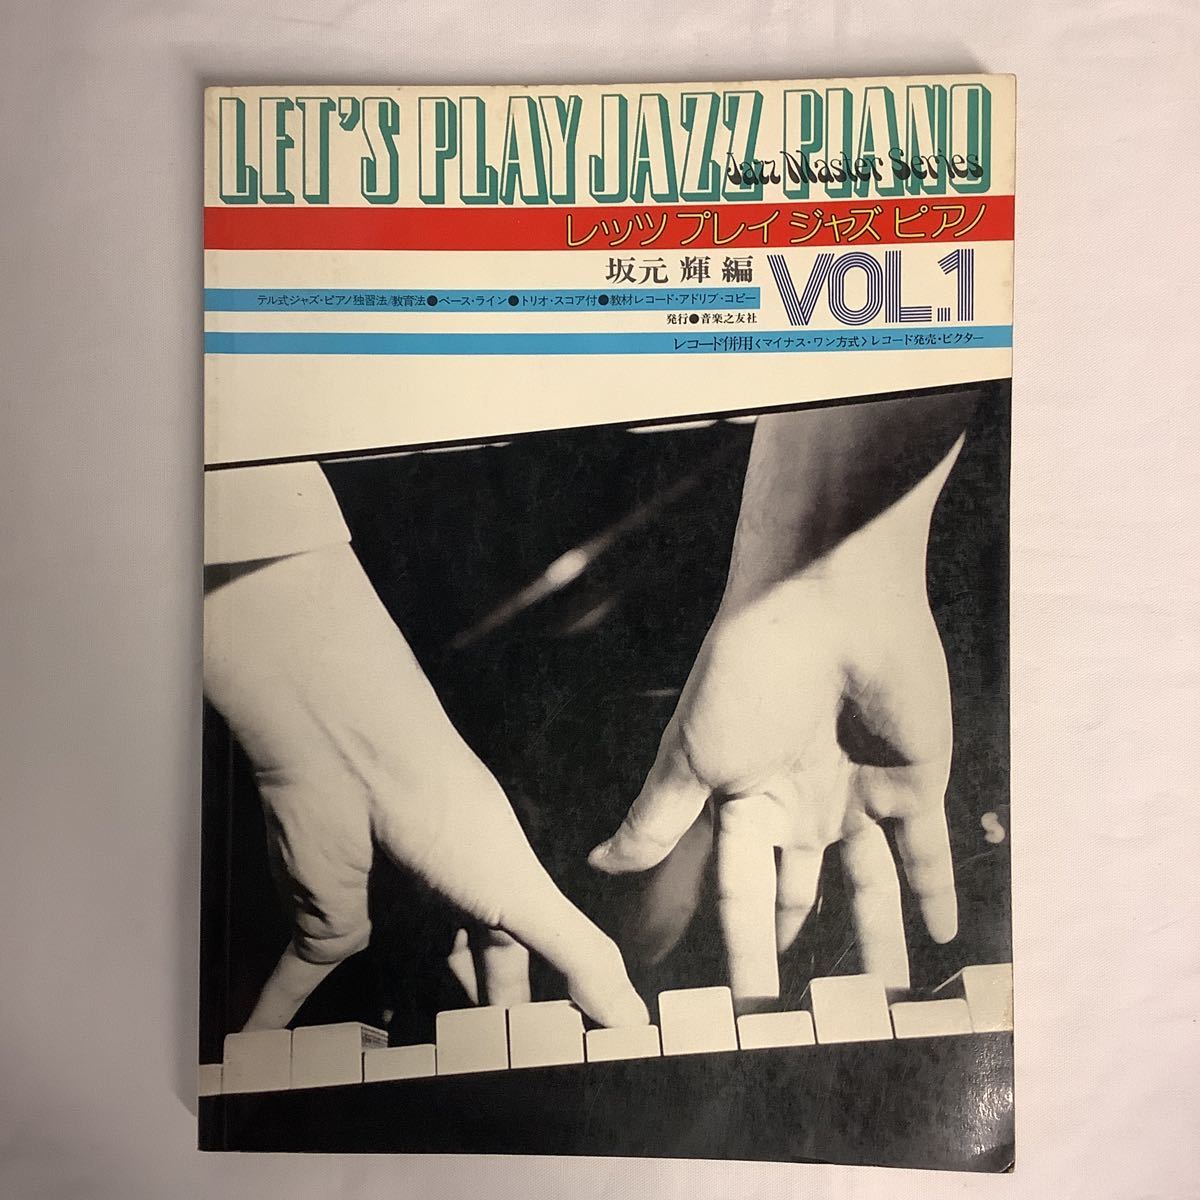 坂元輝 編著 楽譜3冊セット レッツプレイジャズピアノ Vol.1&2 誰にでも弾けるブルース入門_画像2